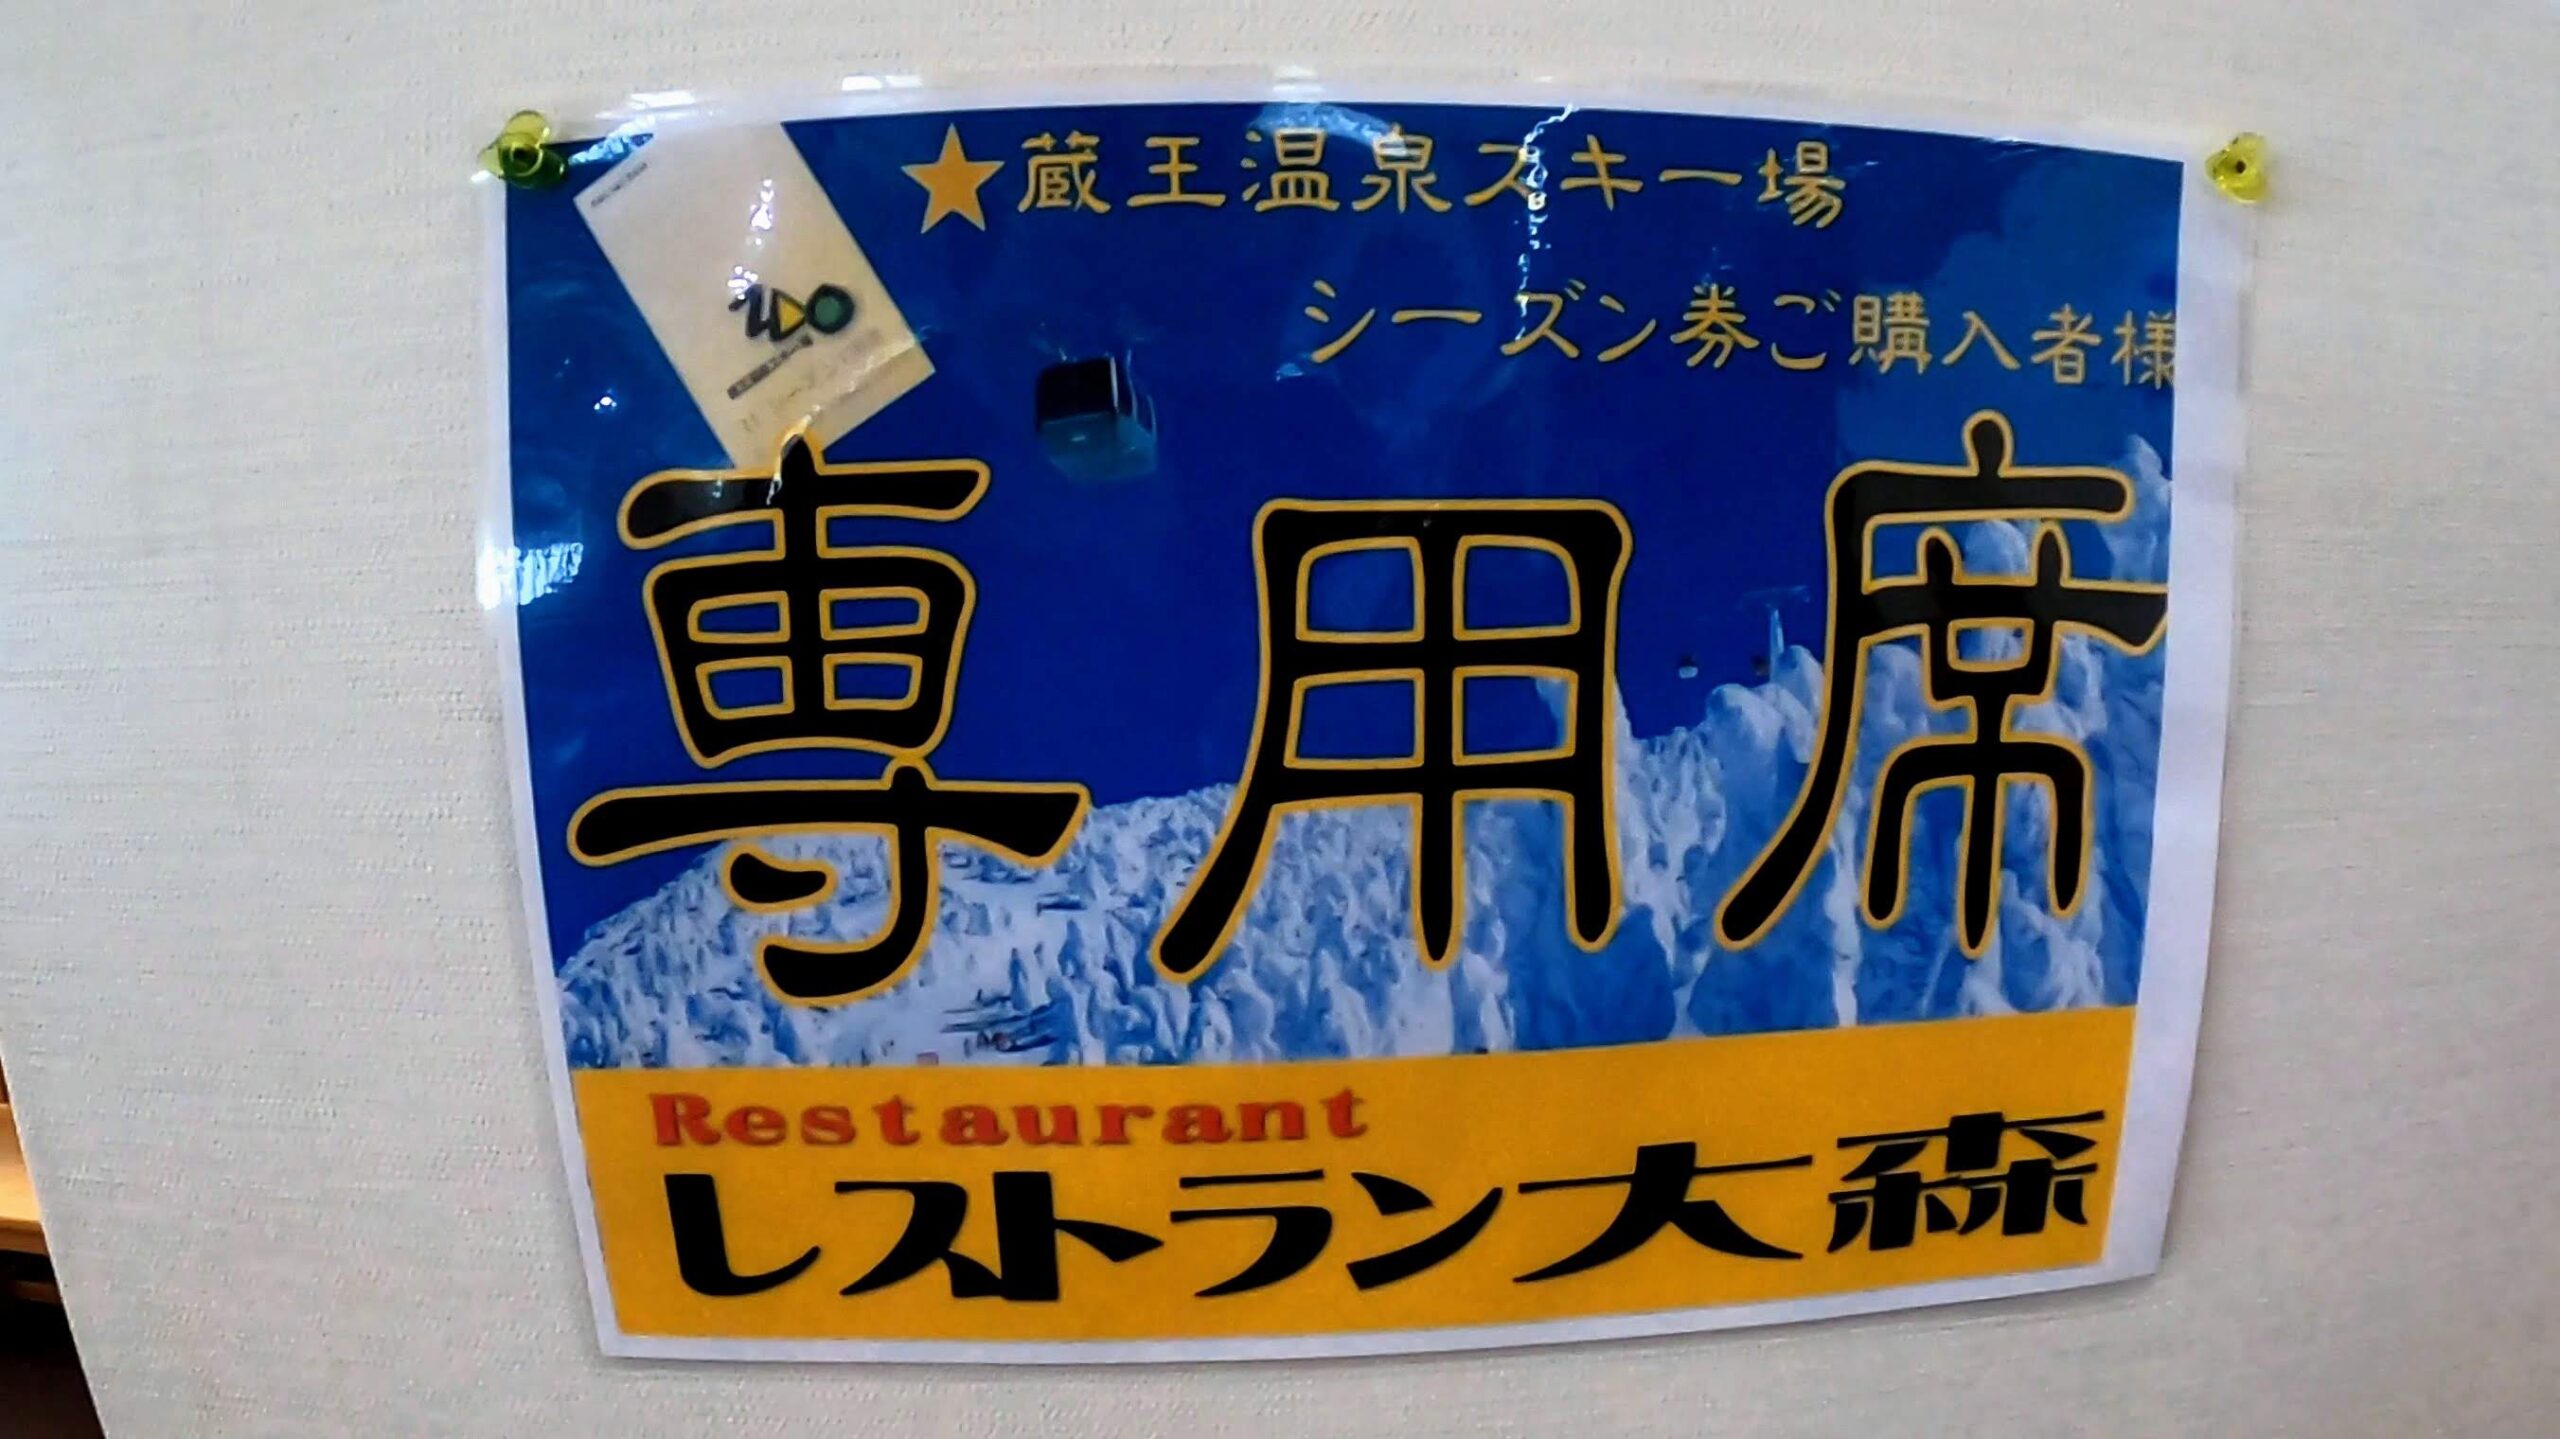 【レストラン大森ファミリー向け 雪の公園】山形蔵王温泉スキー場 Omori-Restaurant-at-Yamagata-Zao-Onsen-Ski-Resort-is-convenient-and-family-friendly.jpg